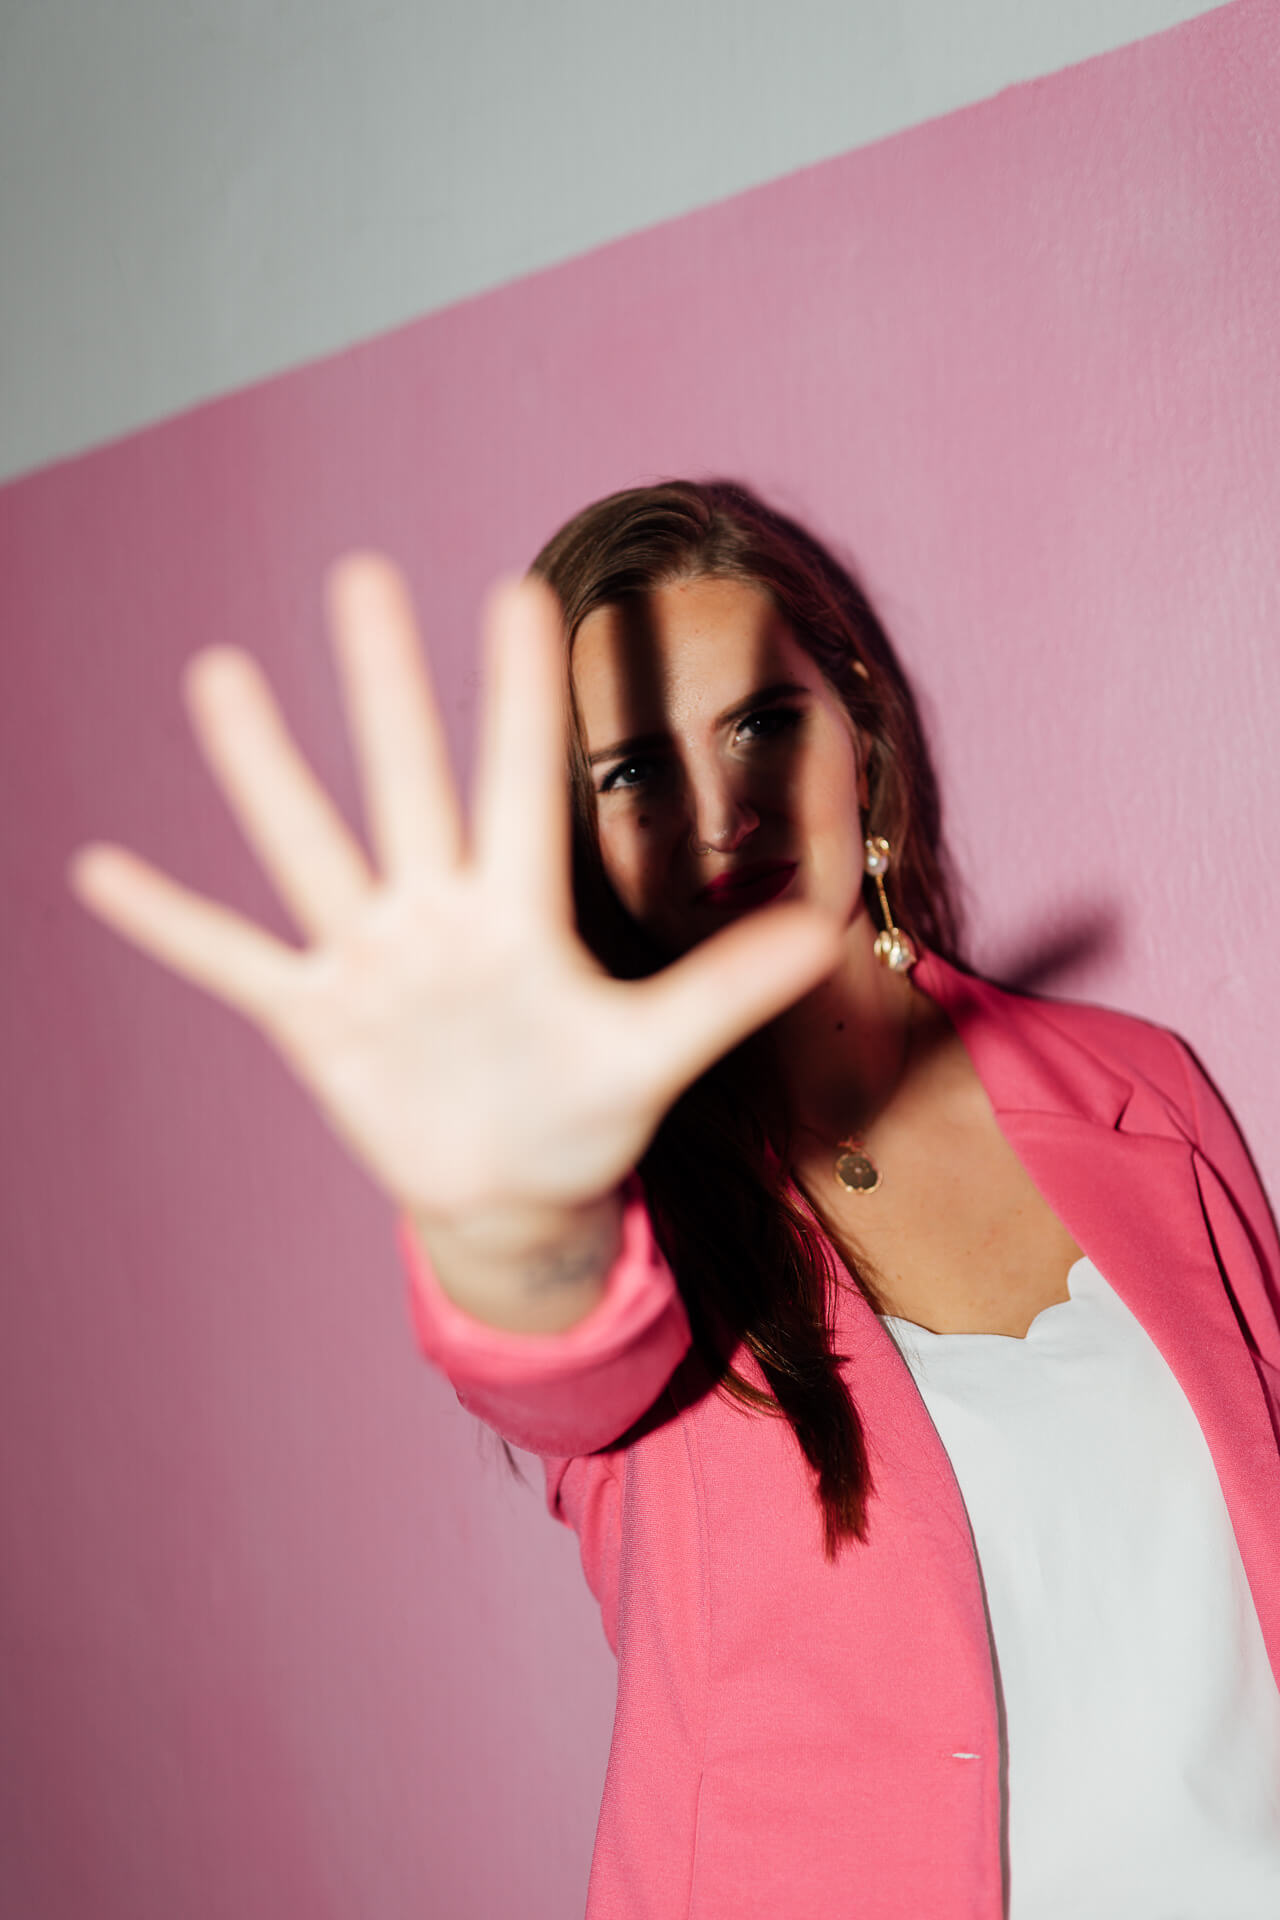 Kreatives Portrait einer Frau im pinken Blazer, die eine Hand vor die Kamera hält. So als wenn sie nicht fotografiert werden will